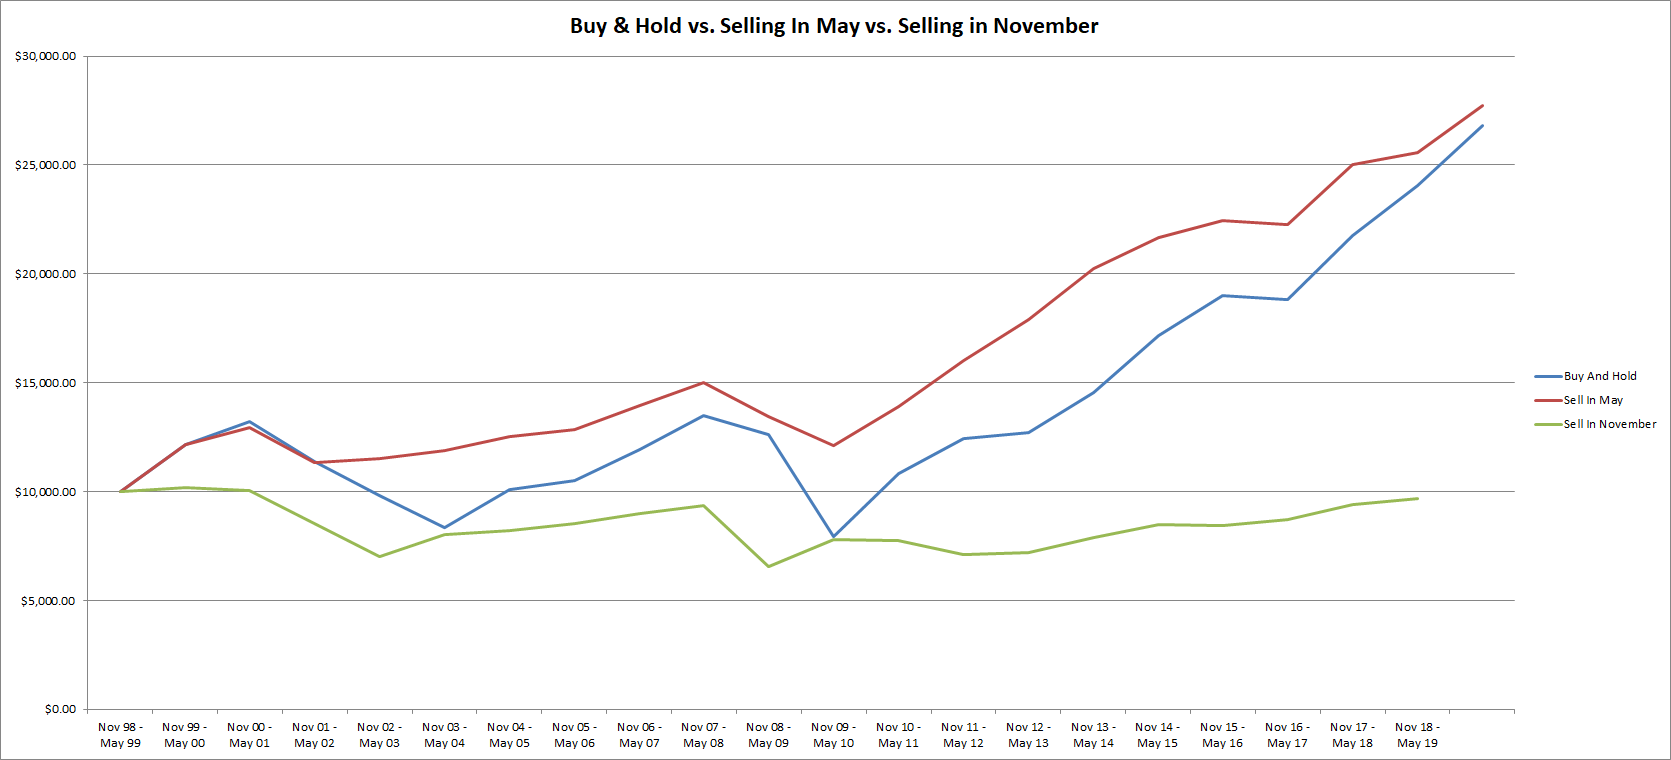 مقارنة بين: الشراء والتمسك، والبيع في مايو، والبيع في نوفمبر